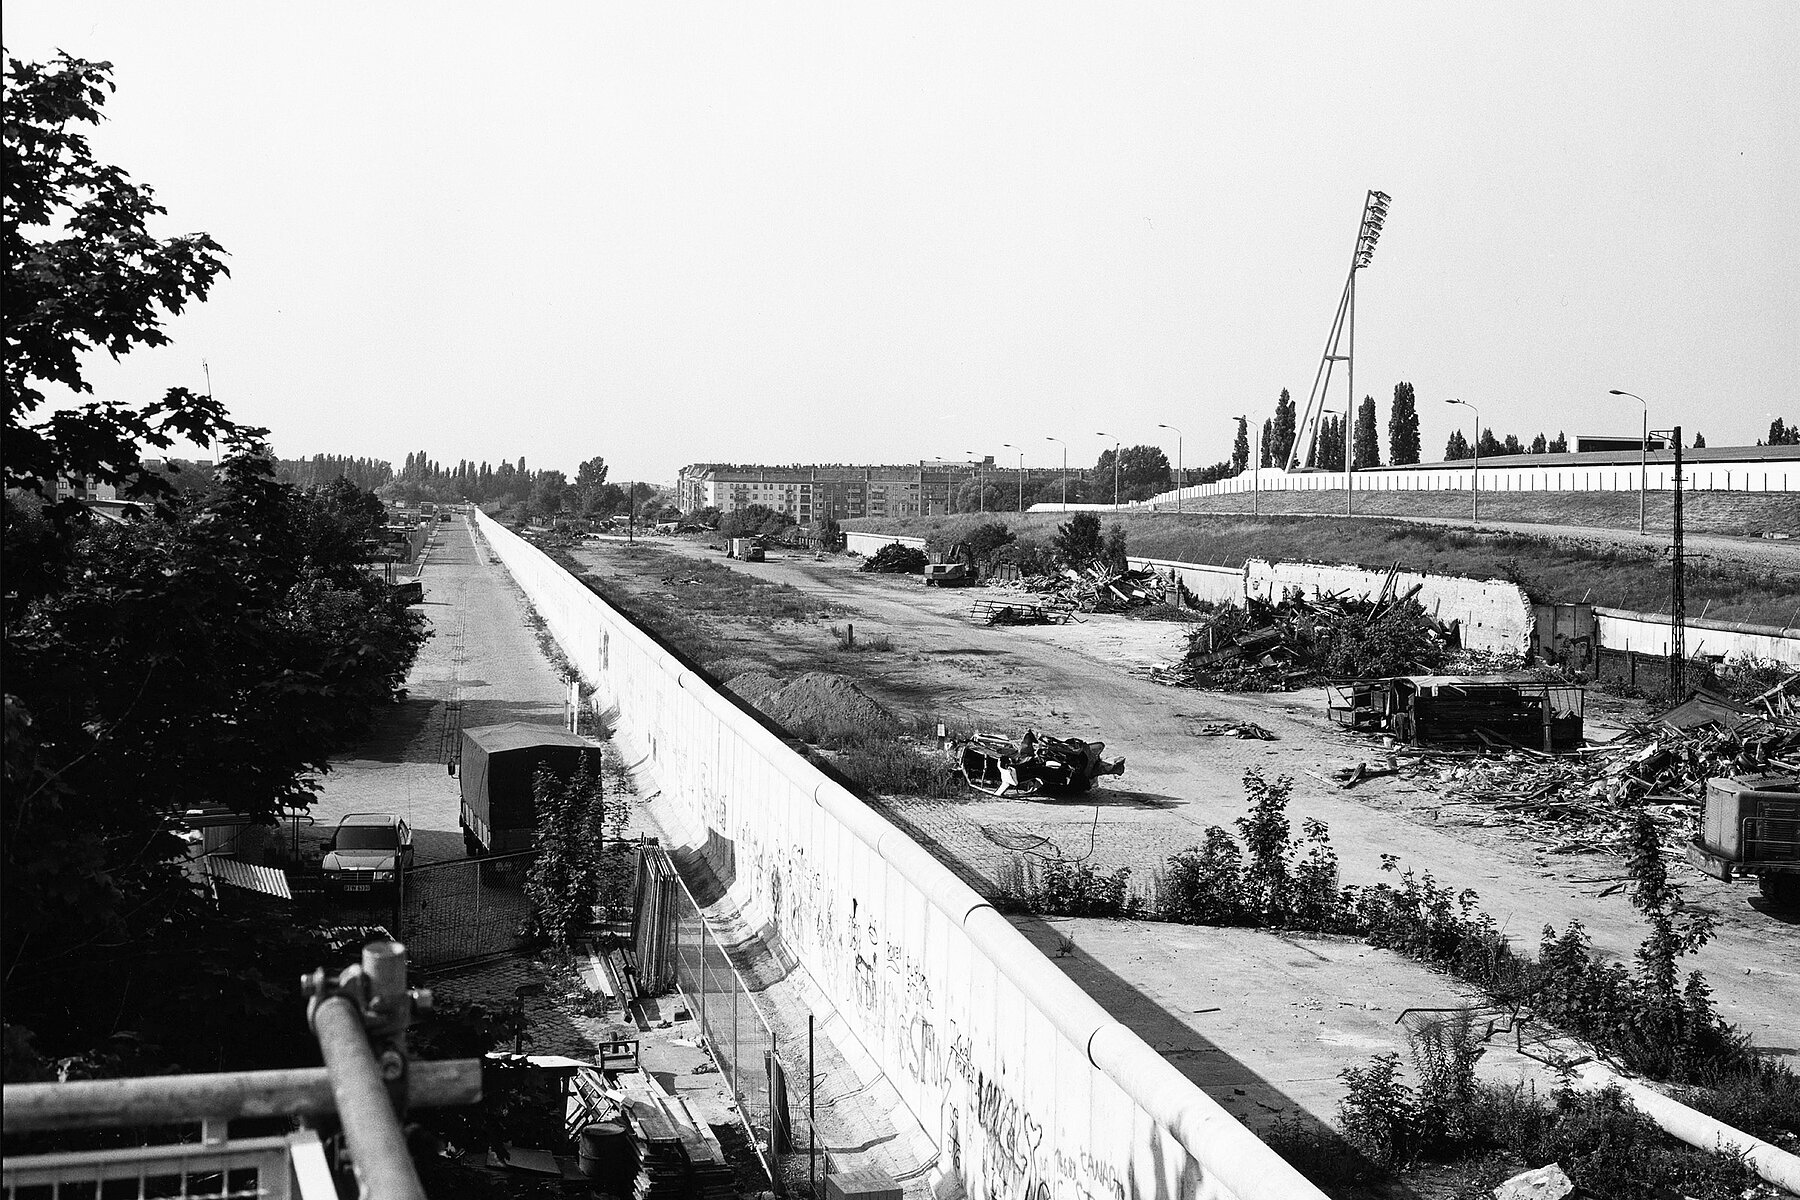 [Translate to English:] Die Berliner Mauer im späteren Gelände des Mauerparks. Rechts der Mauer befindet sich Schutt, ganz rechts sind die Flutlichter des Jahnsportparks. 